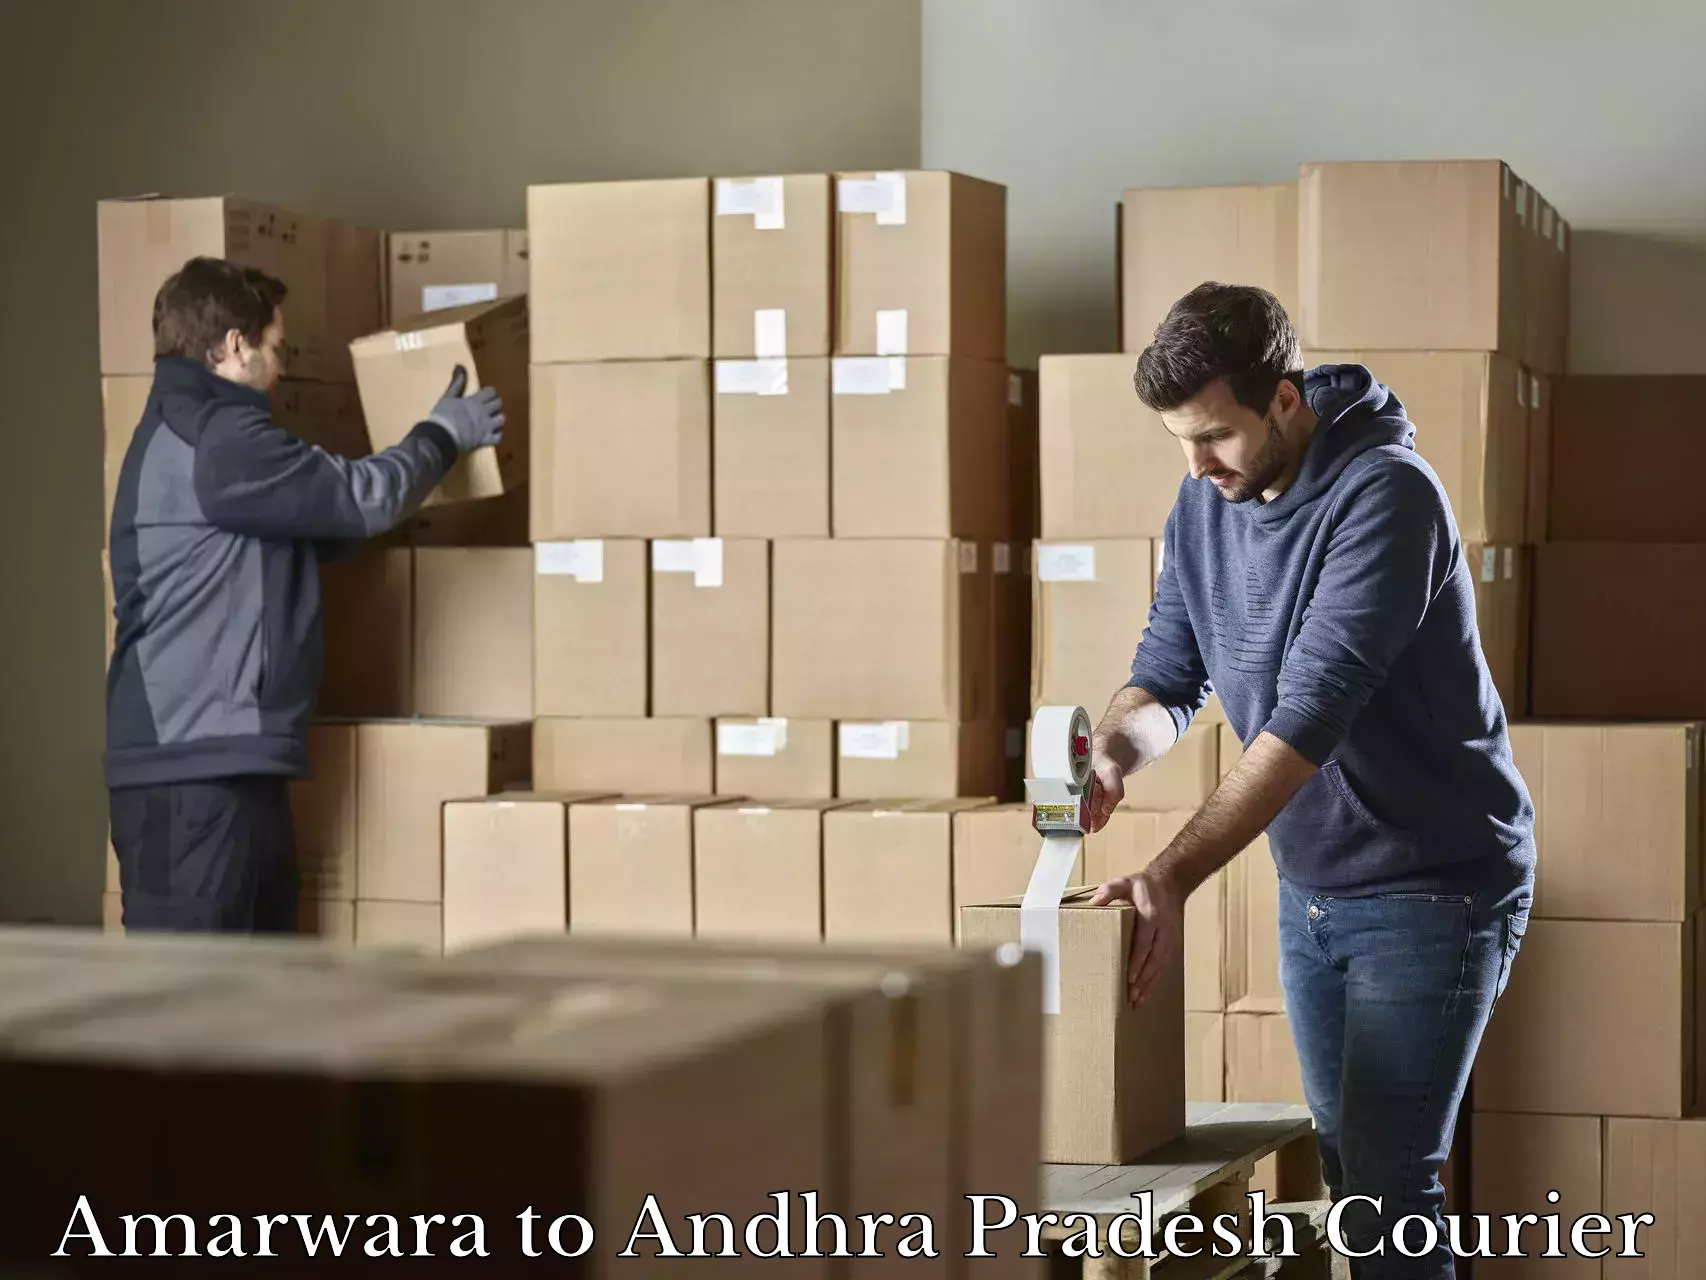 Baggage shipping experts Amarwara to Andhra Pradesh